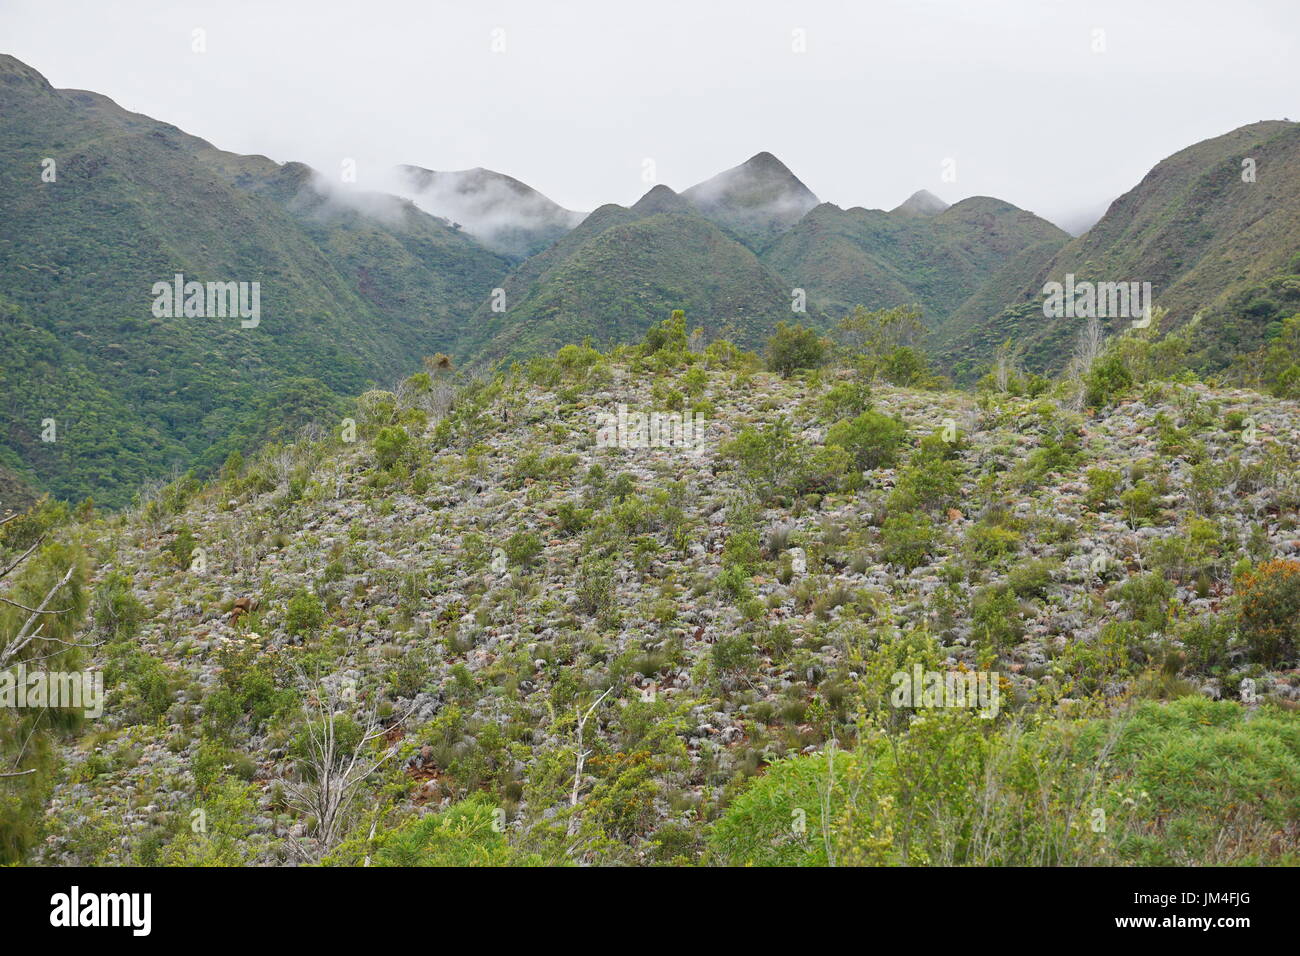 La vegetación en las laderas de las montañas, Dumbea, Grande-Terre Island, Nueva Caledonia, Pacífico sur, Oceanía Foto de stock